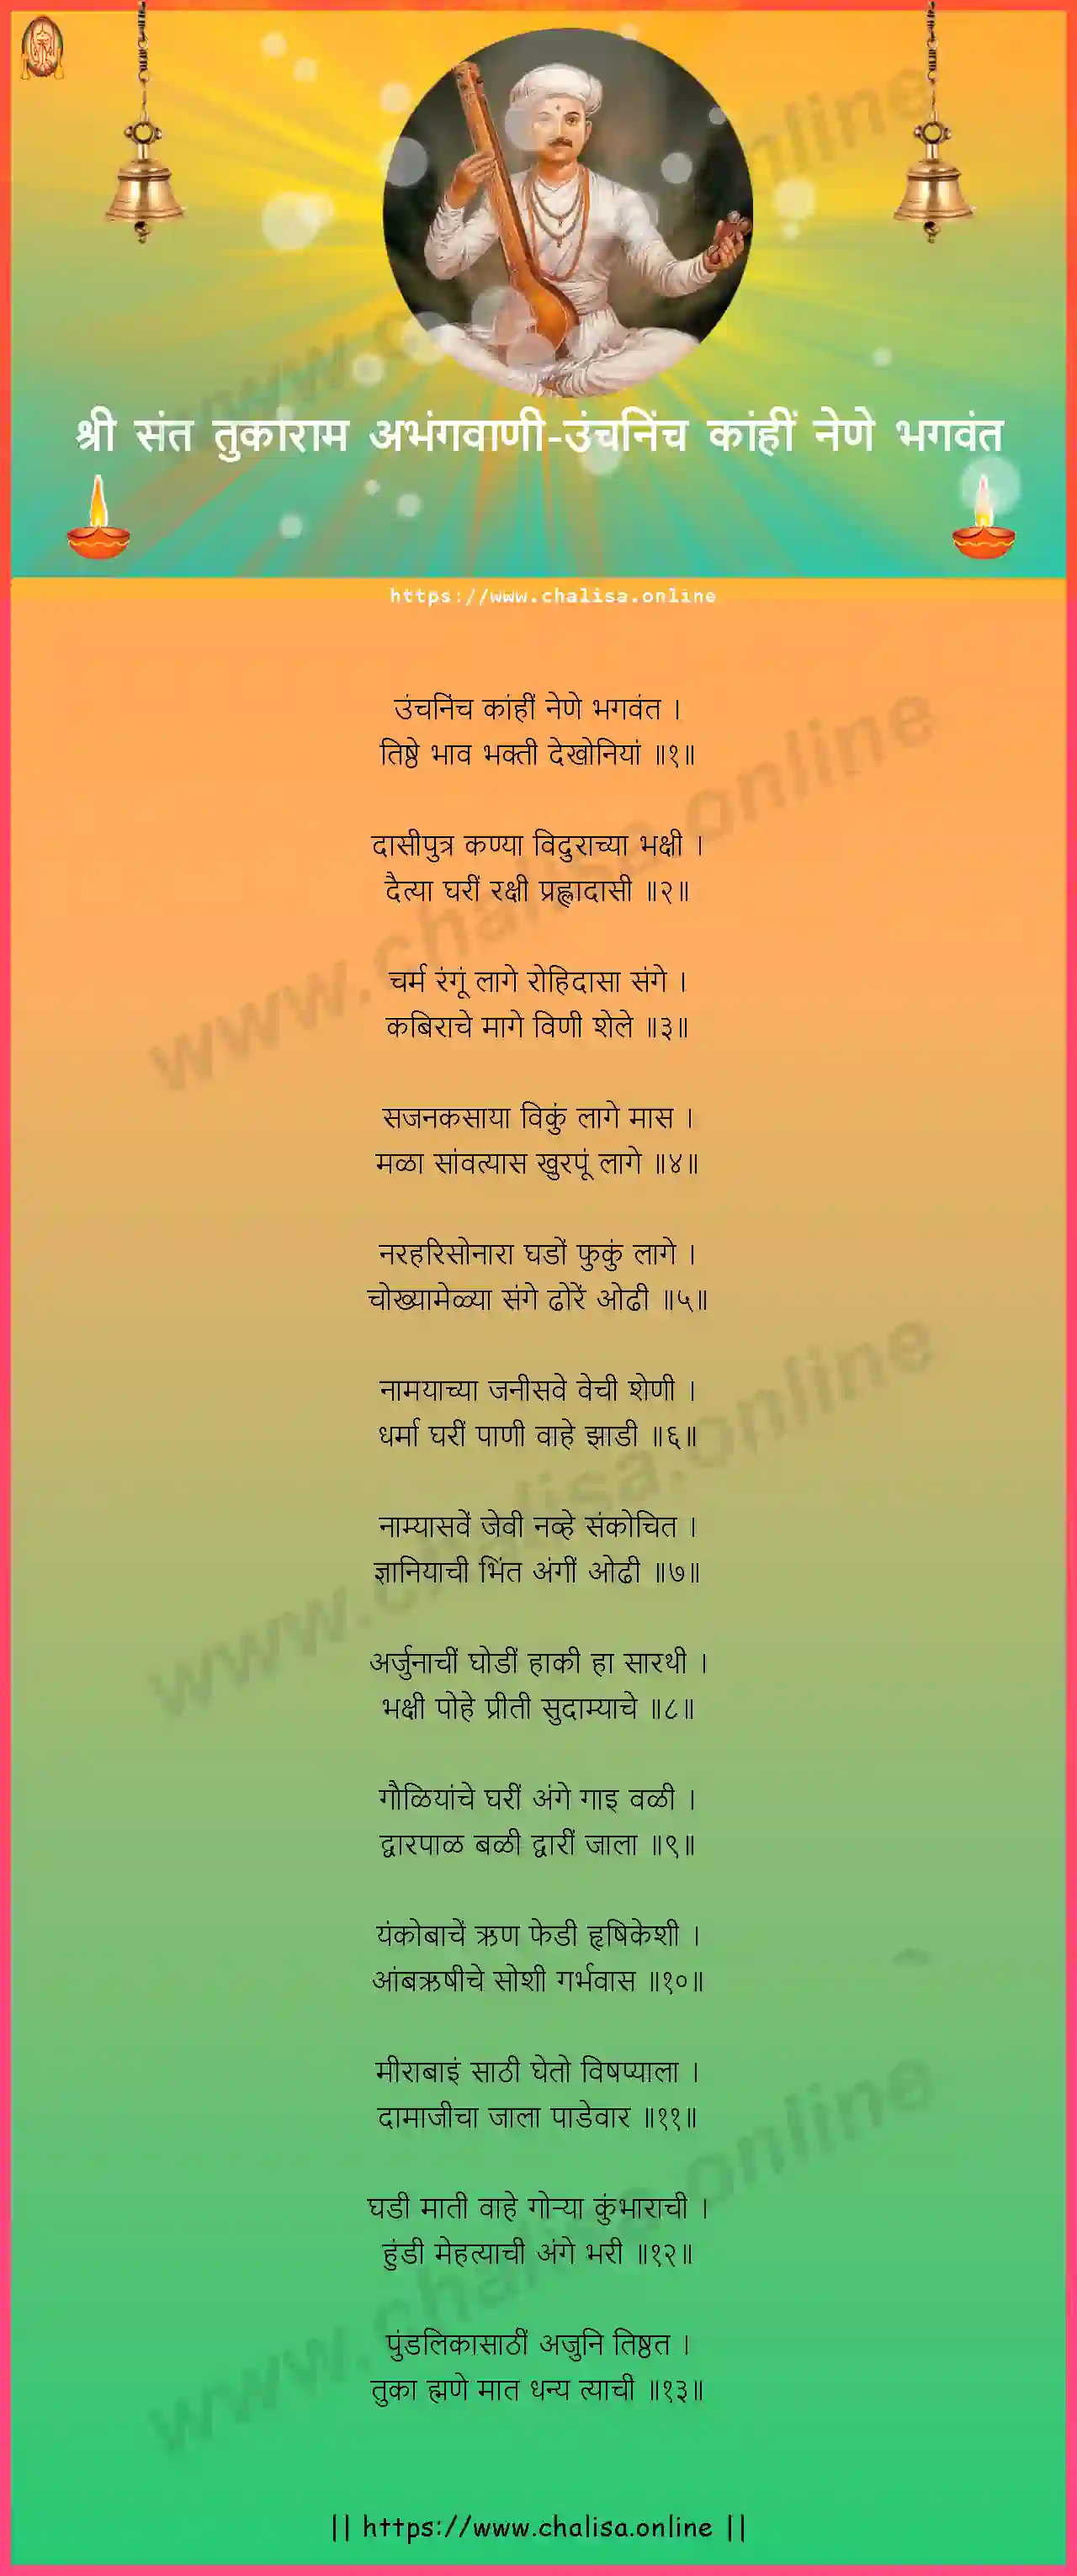 unch-ninch-kahi-nene-shri-sant-tukaram-abhang-marathi-lyrics-download